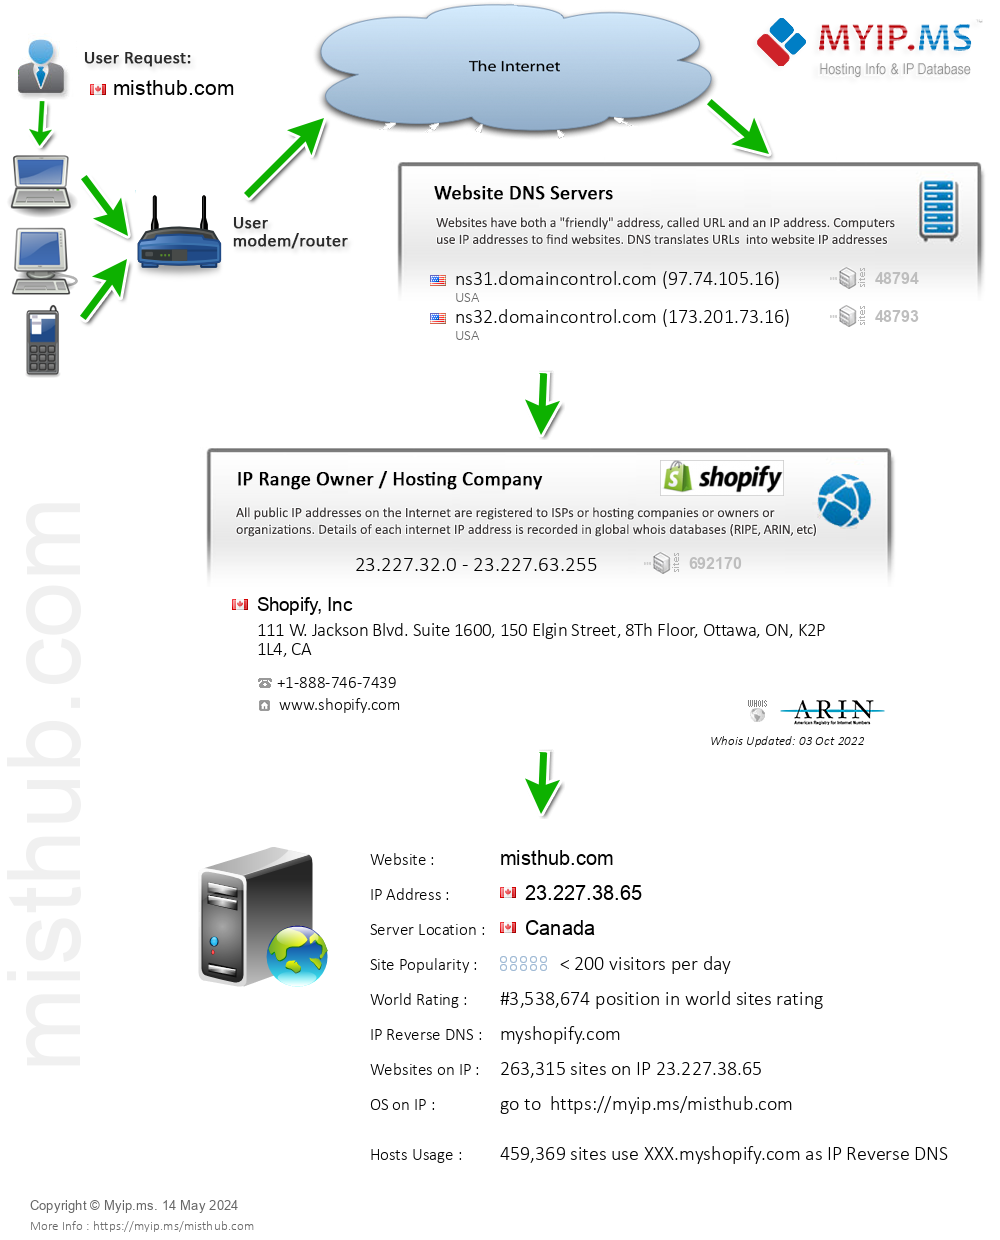 Misthub.com - Website Hosting Visual IP Diagram